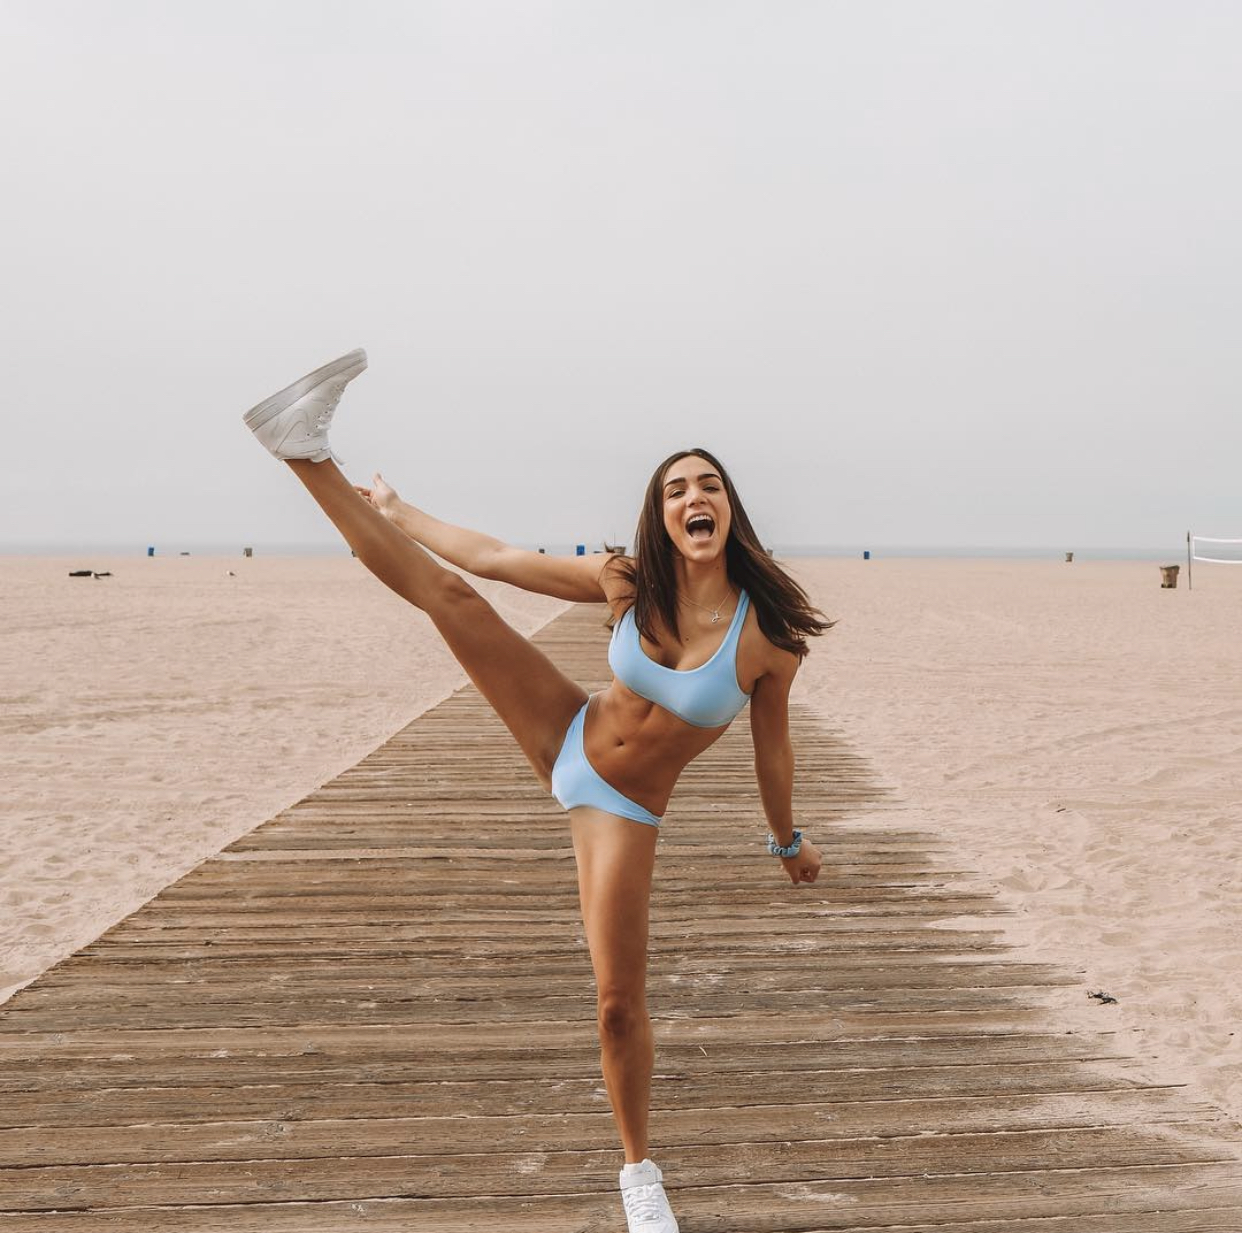 Джейми Роббинс — экс-волейболистка и модель. В 2017-м выступала за студенческую команду Ucla!